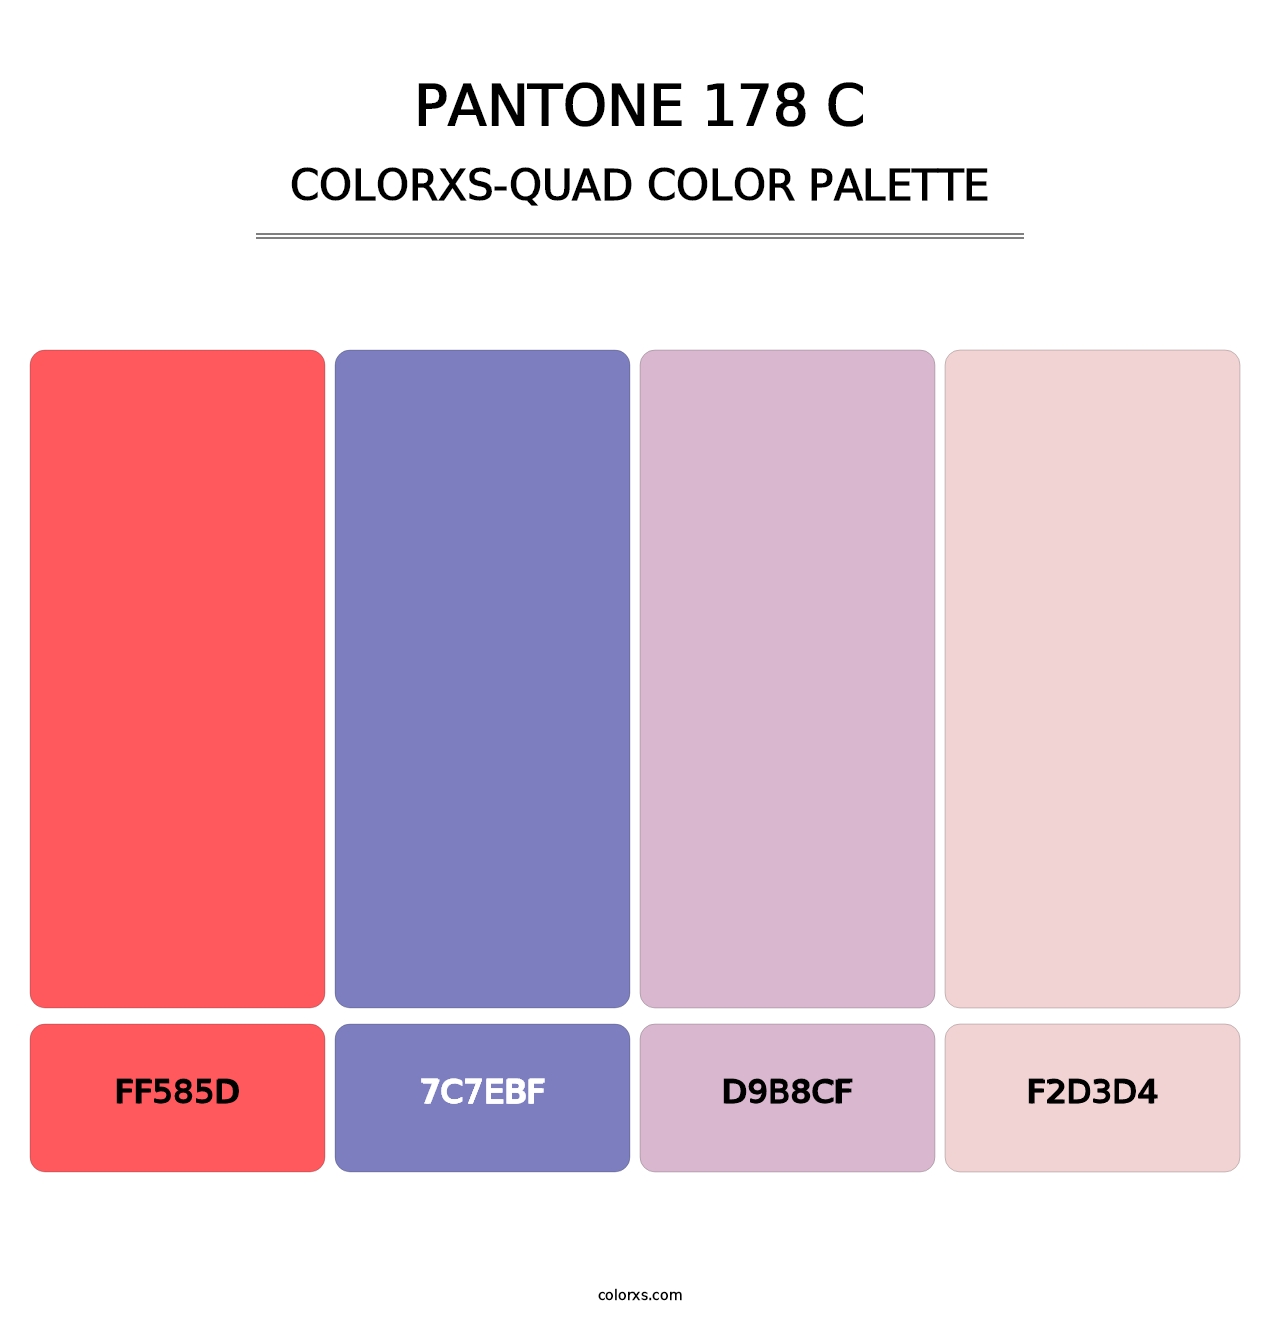 PANTONE 178 C - Colorxs Quad Palette